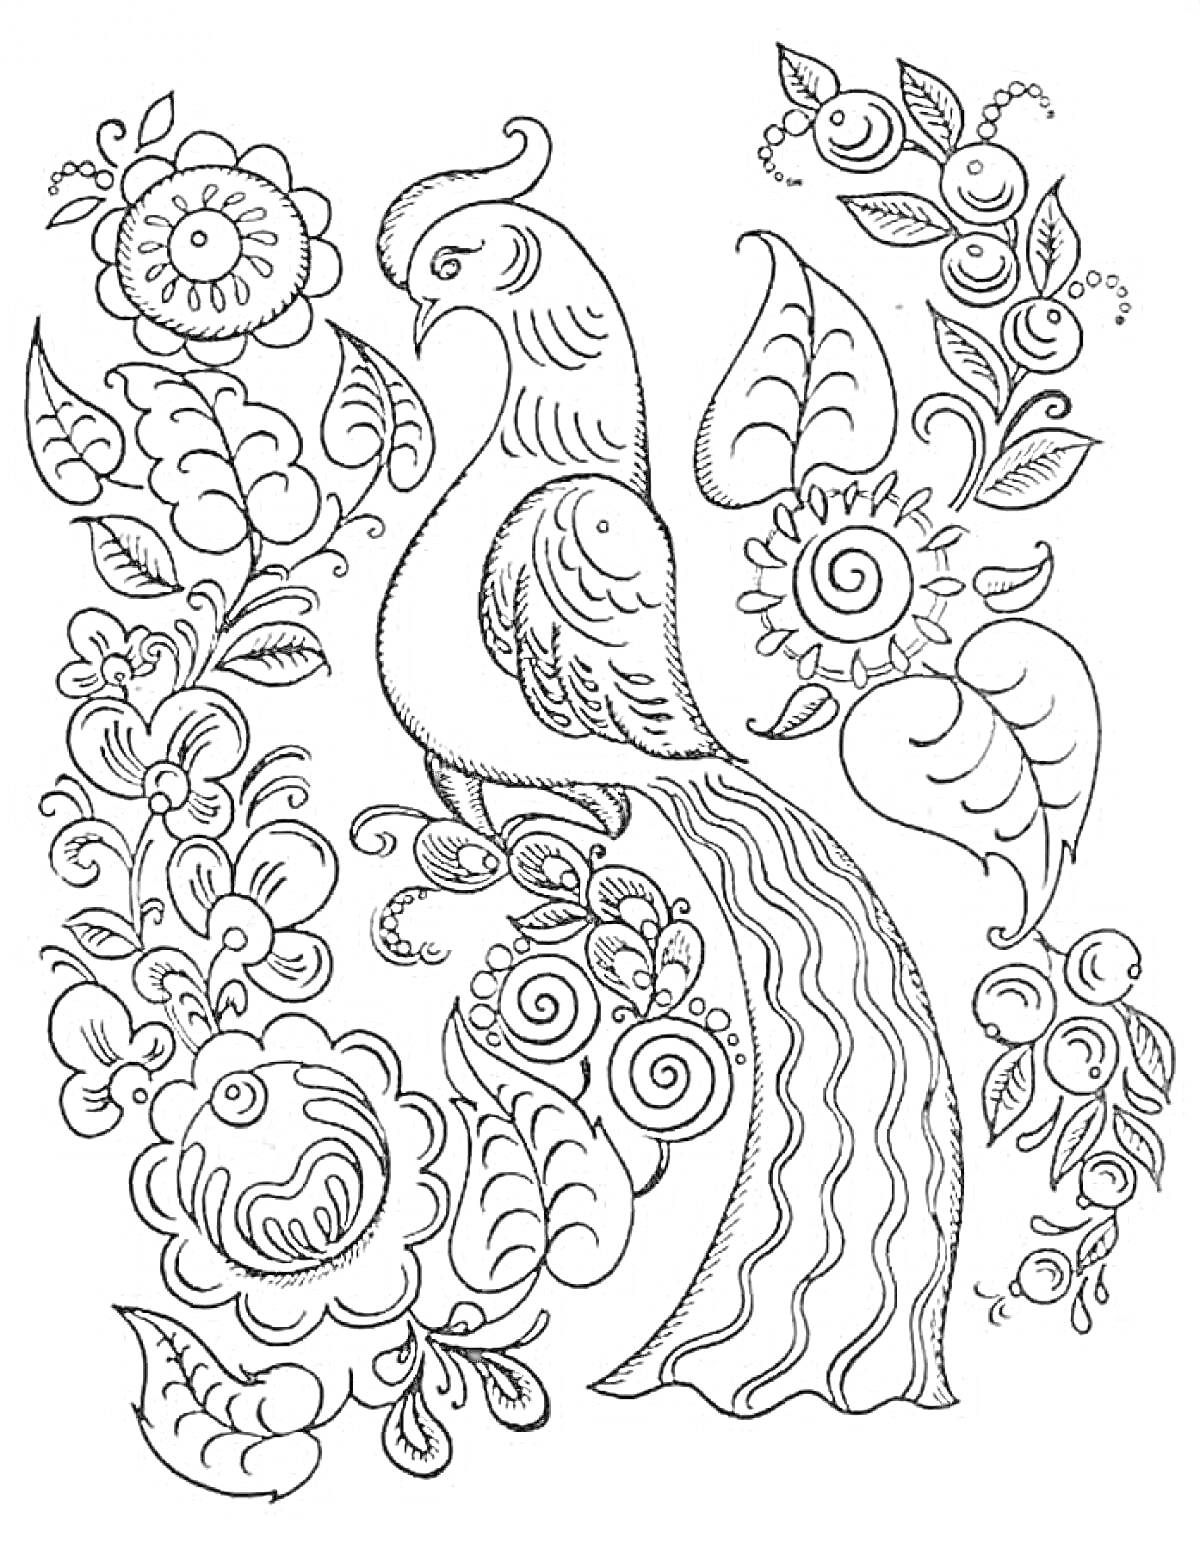 Раскраска Павлин среди цветочно-лиственных орнаментов (павлин, цветы, листья, завитки).